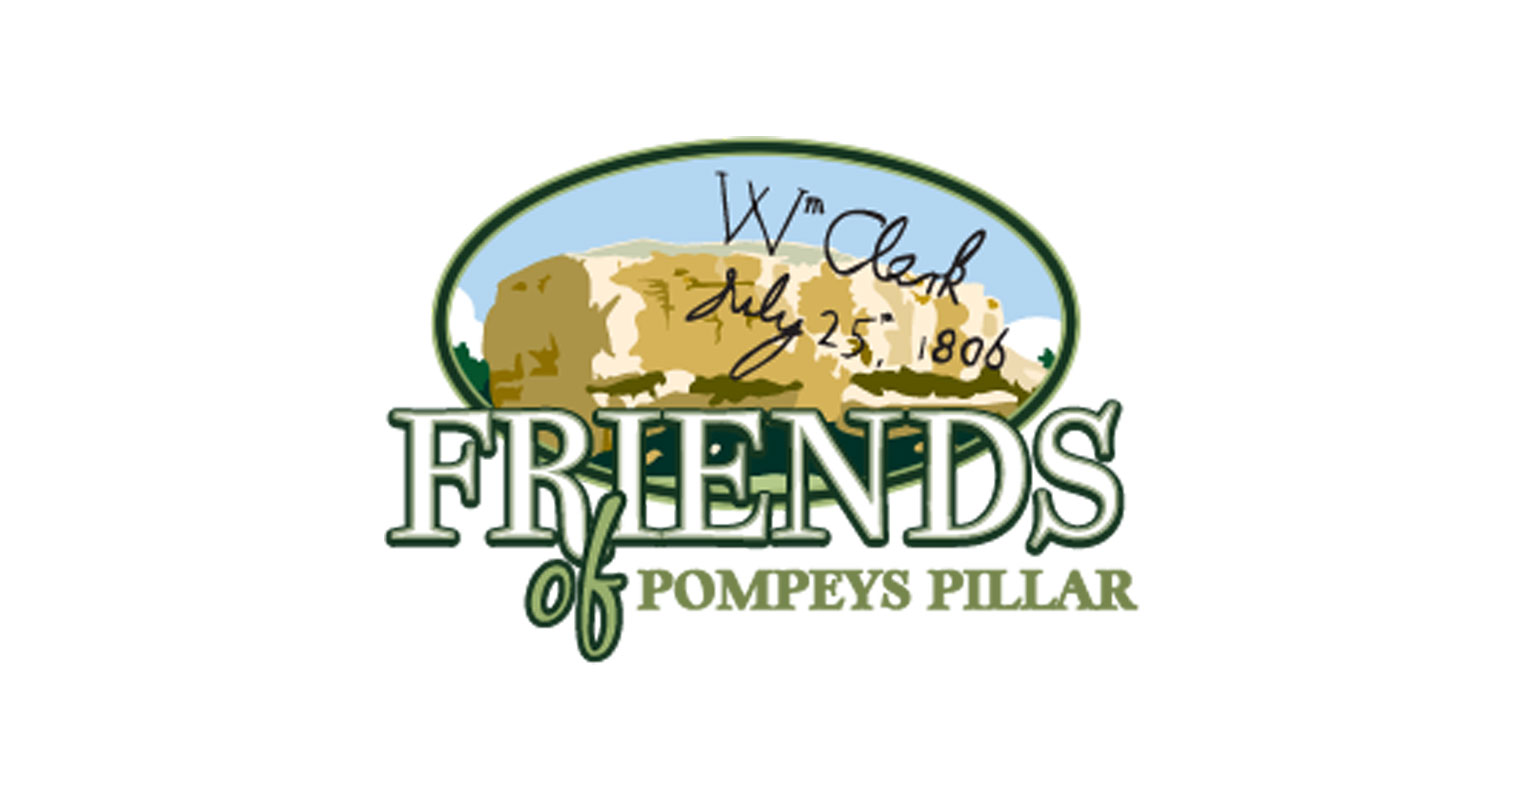 Friends of Pompeys Pillar